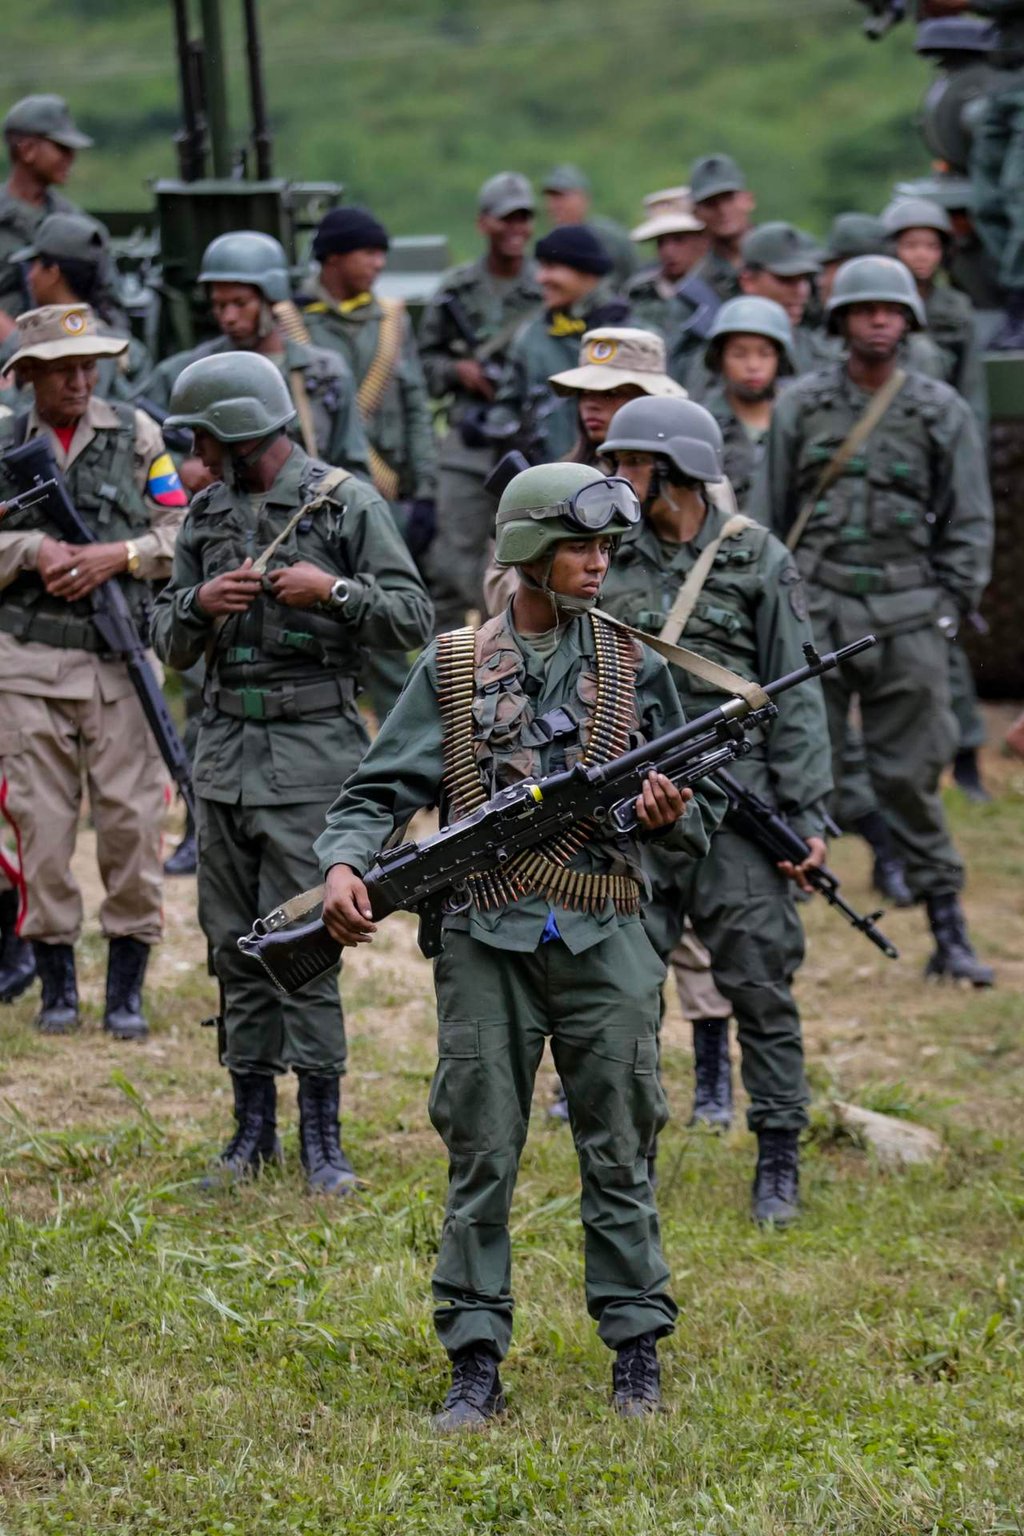 Indagan si soldados venezolanos cruzaron la frontera